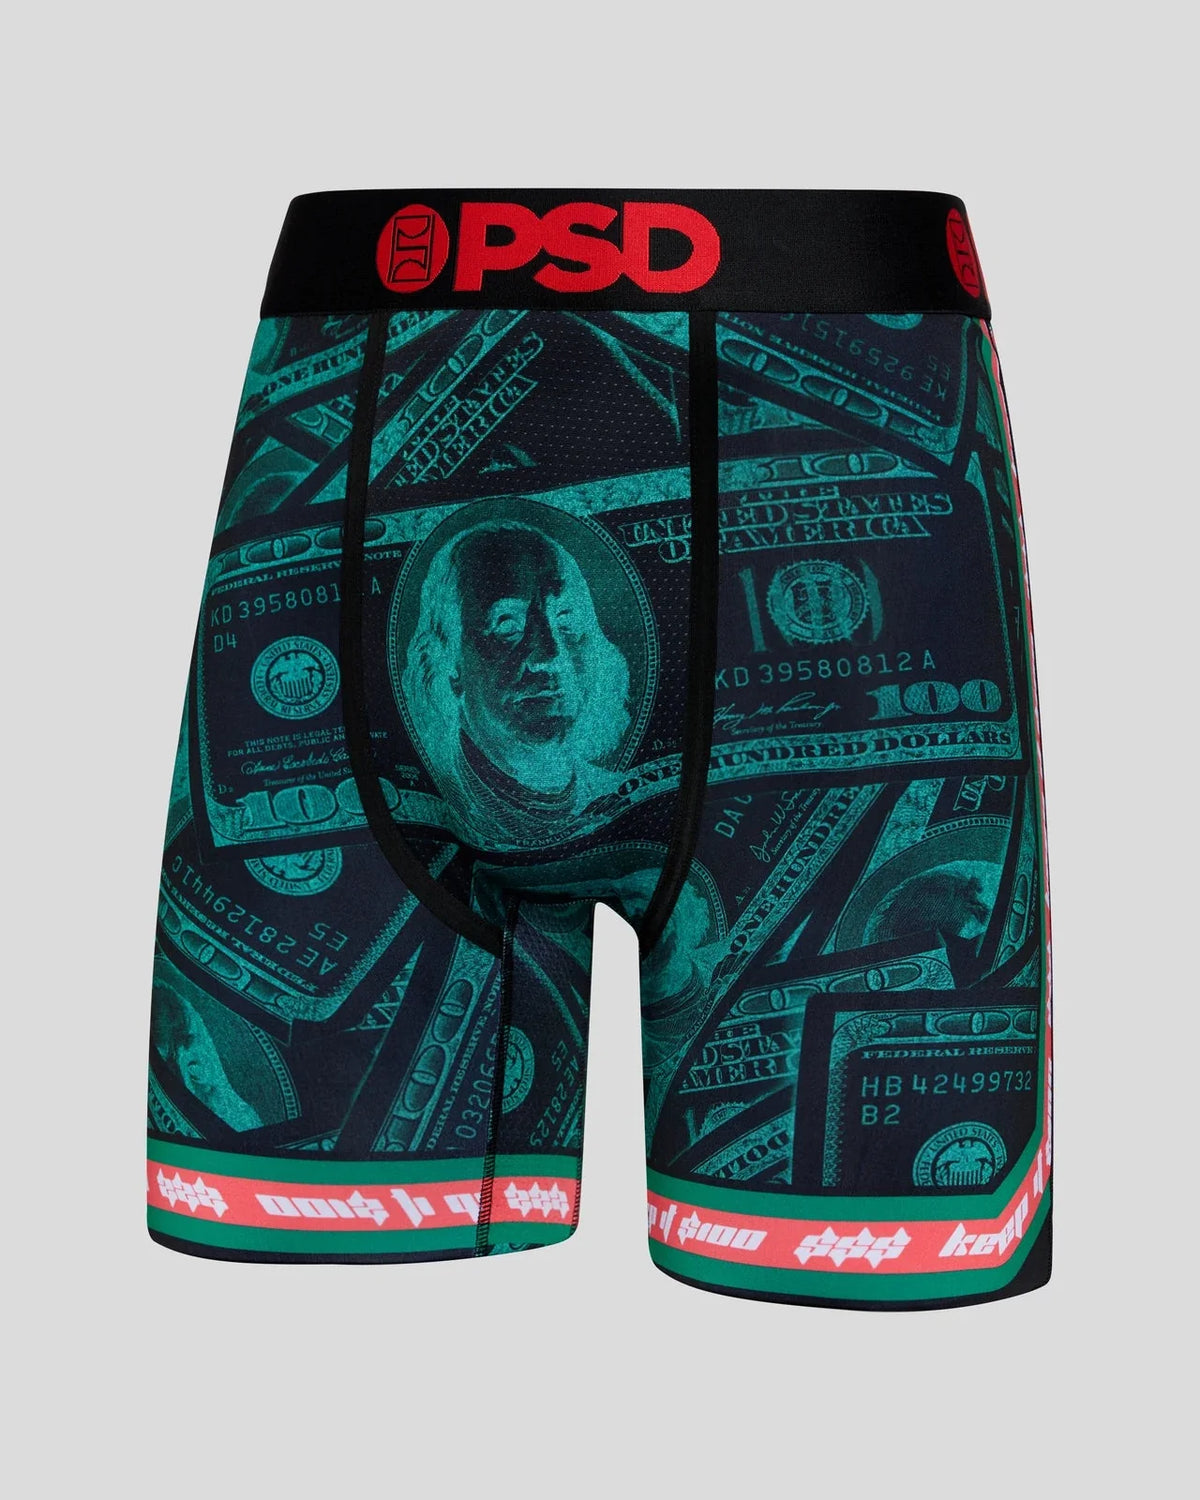 Psd Underwearmen's Striped Nylon Spandex Boxer Briefs - Top Rated Underwear